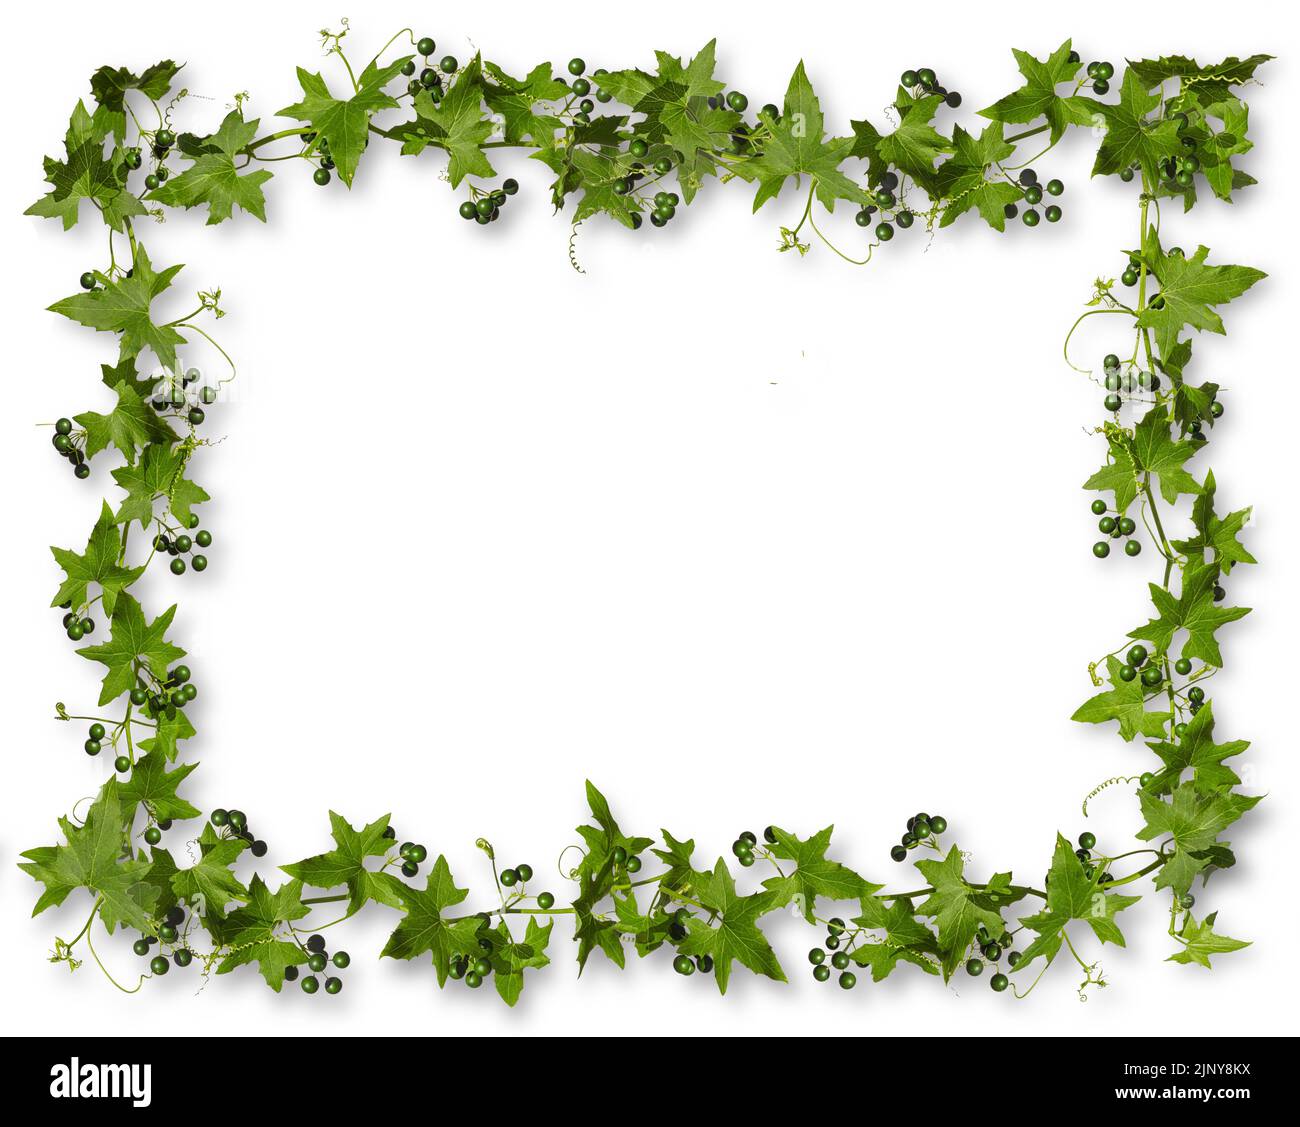 Ivy con bacche verdi isolate su sfondo bianco con ombre, cornice rettangolare. Foto Stock